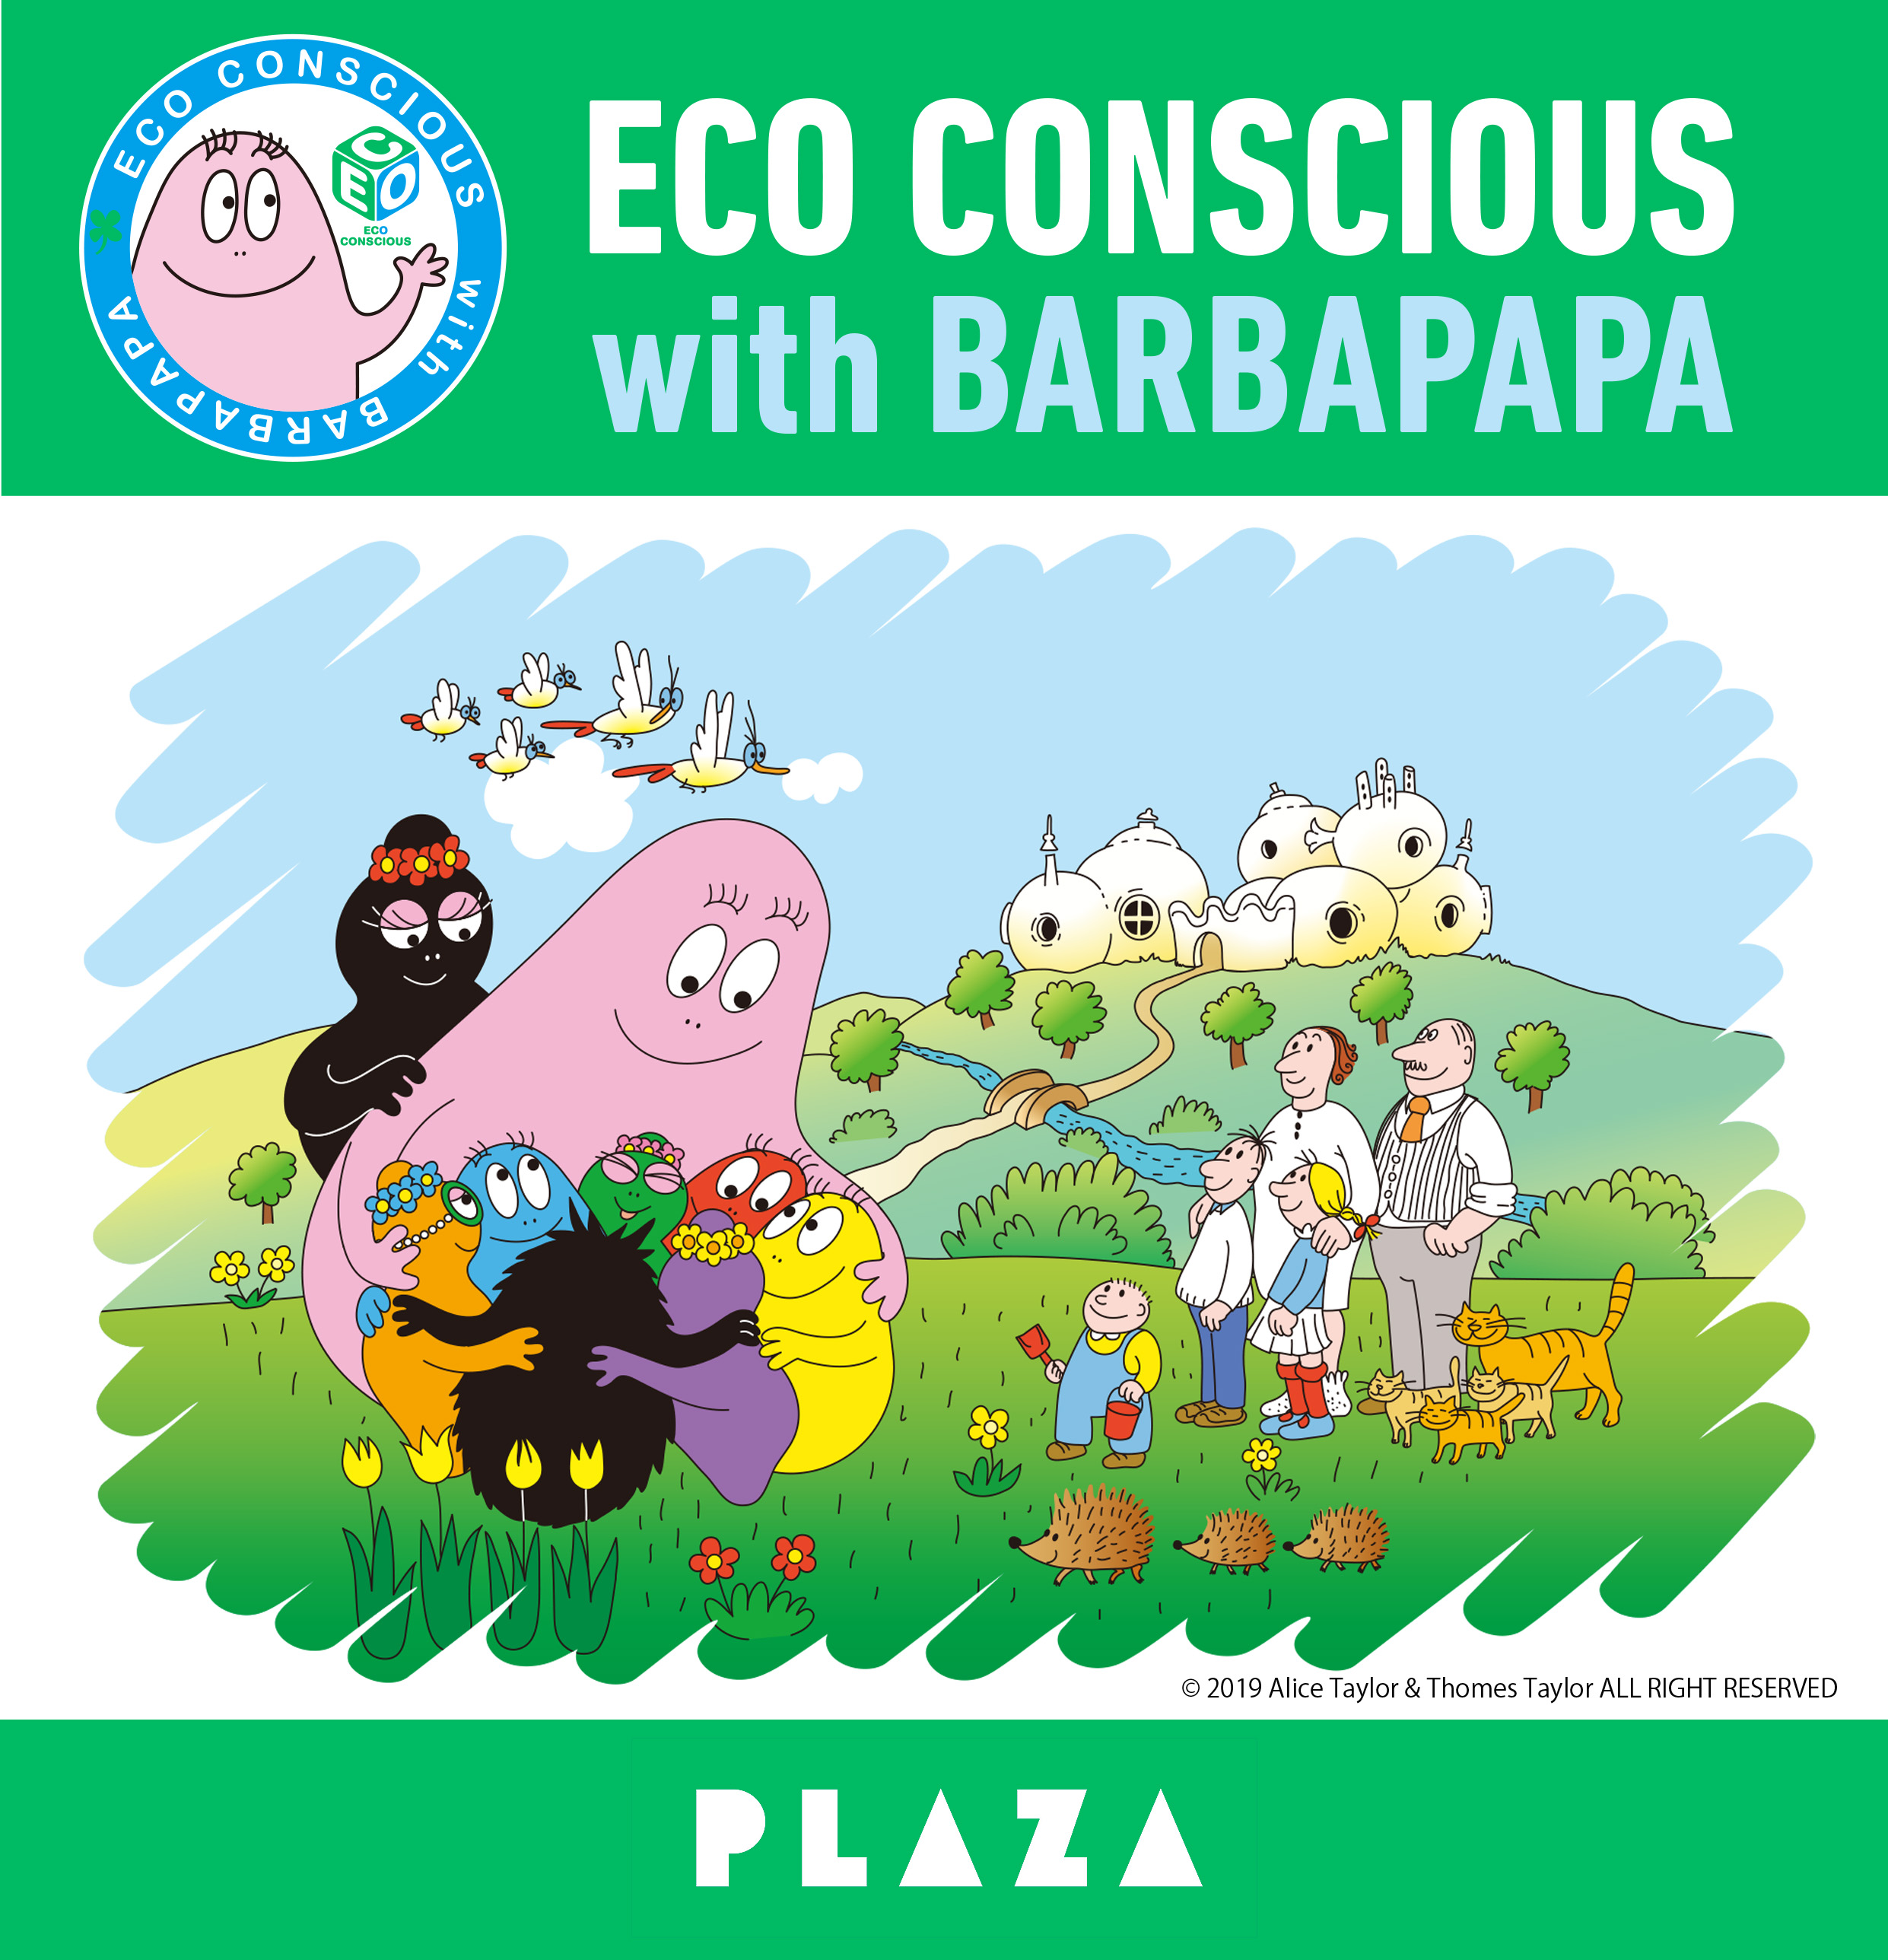 Plaza バーバパパ 商品の売上で 花と緑あふれる都市づくりや学校の校庭芝生化をサポート プラザスタイルのプレスリリース